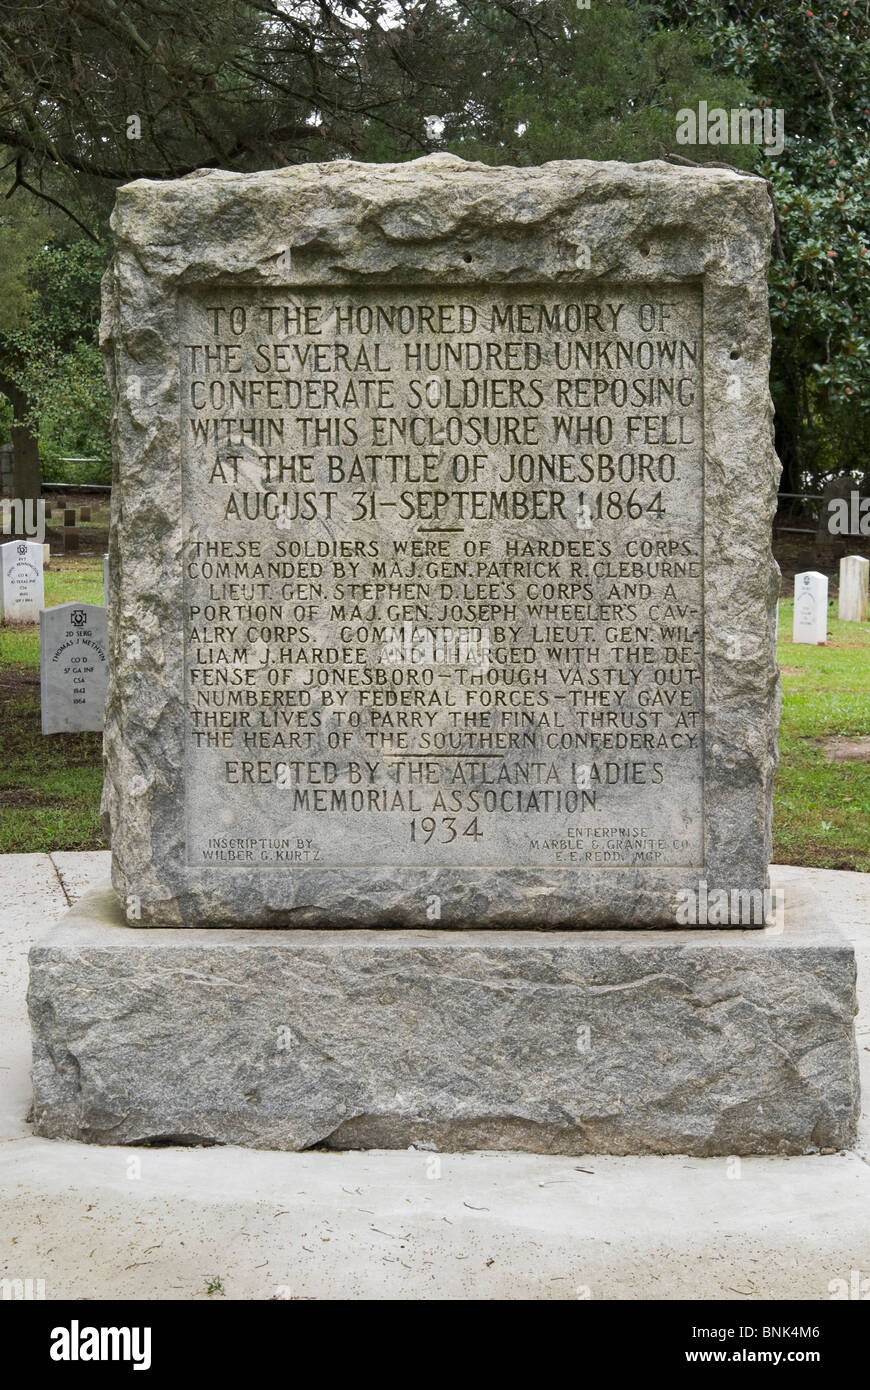 Grave marker in the Confederate Memorial Cemetery of Jonesboro, Georgia, USA Stock Photo